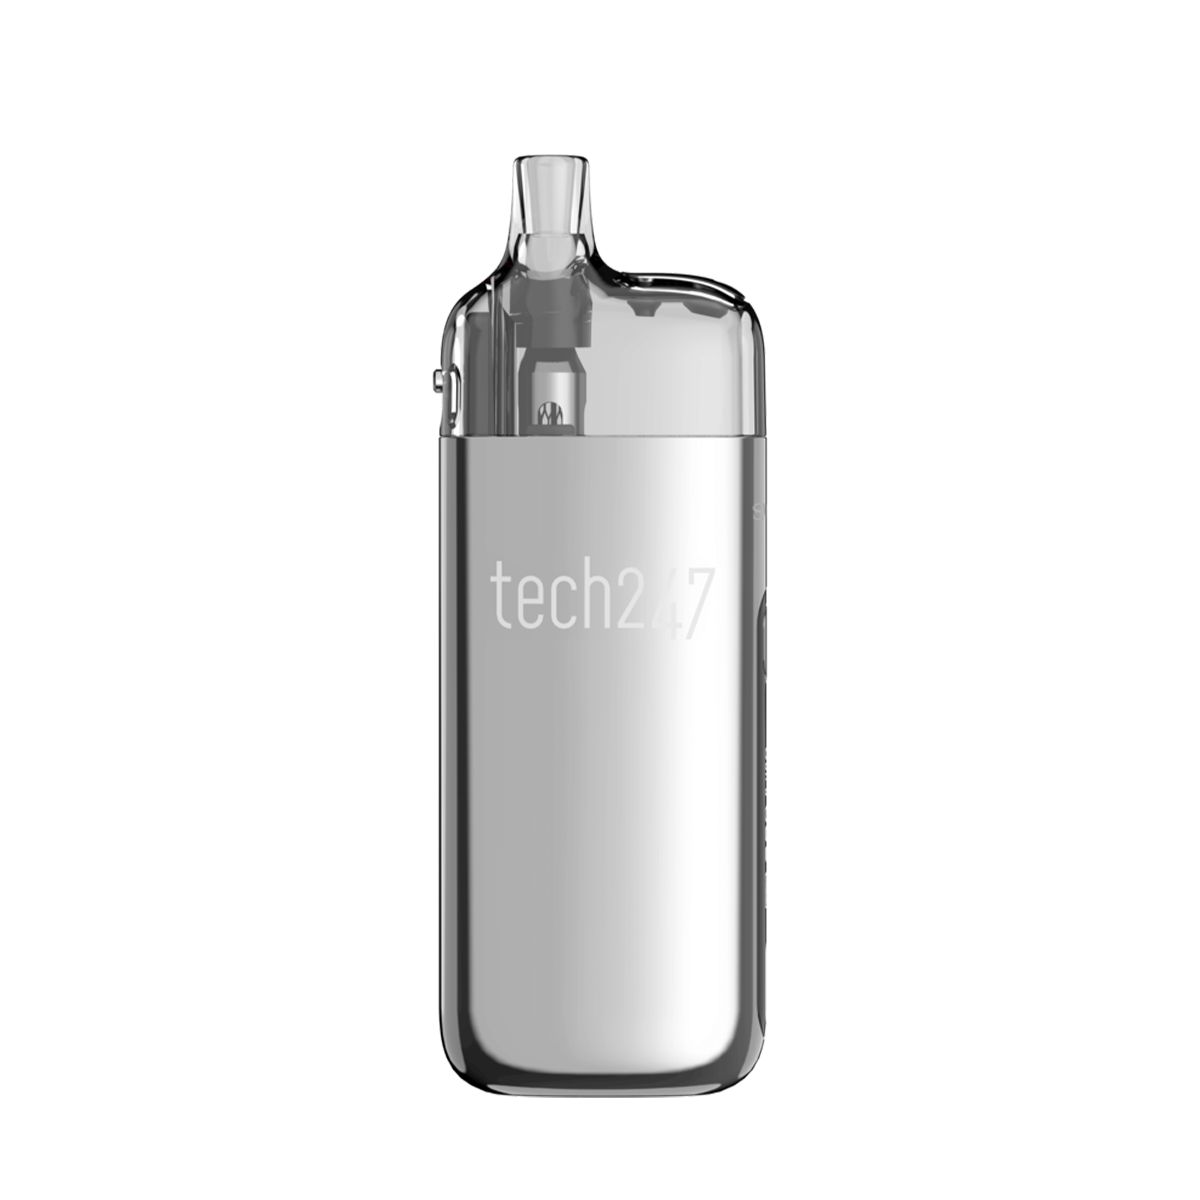 Smok Tech247 Pod-Mod Kit Silver  